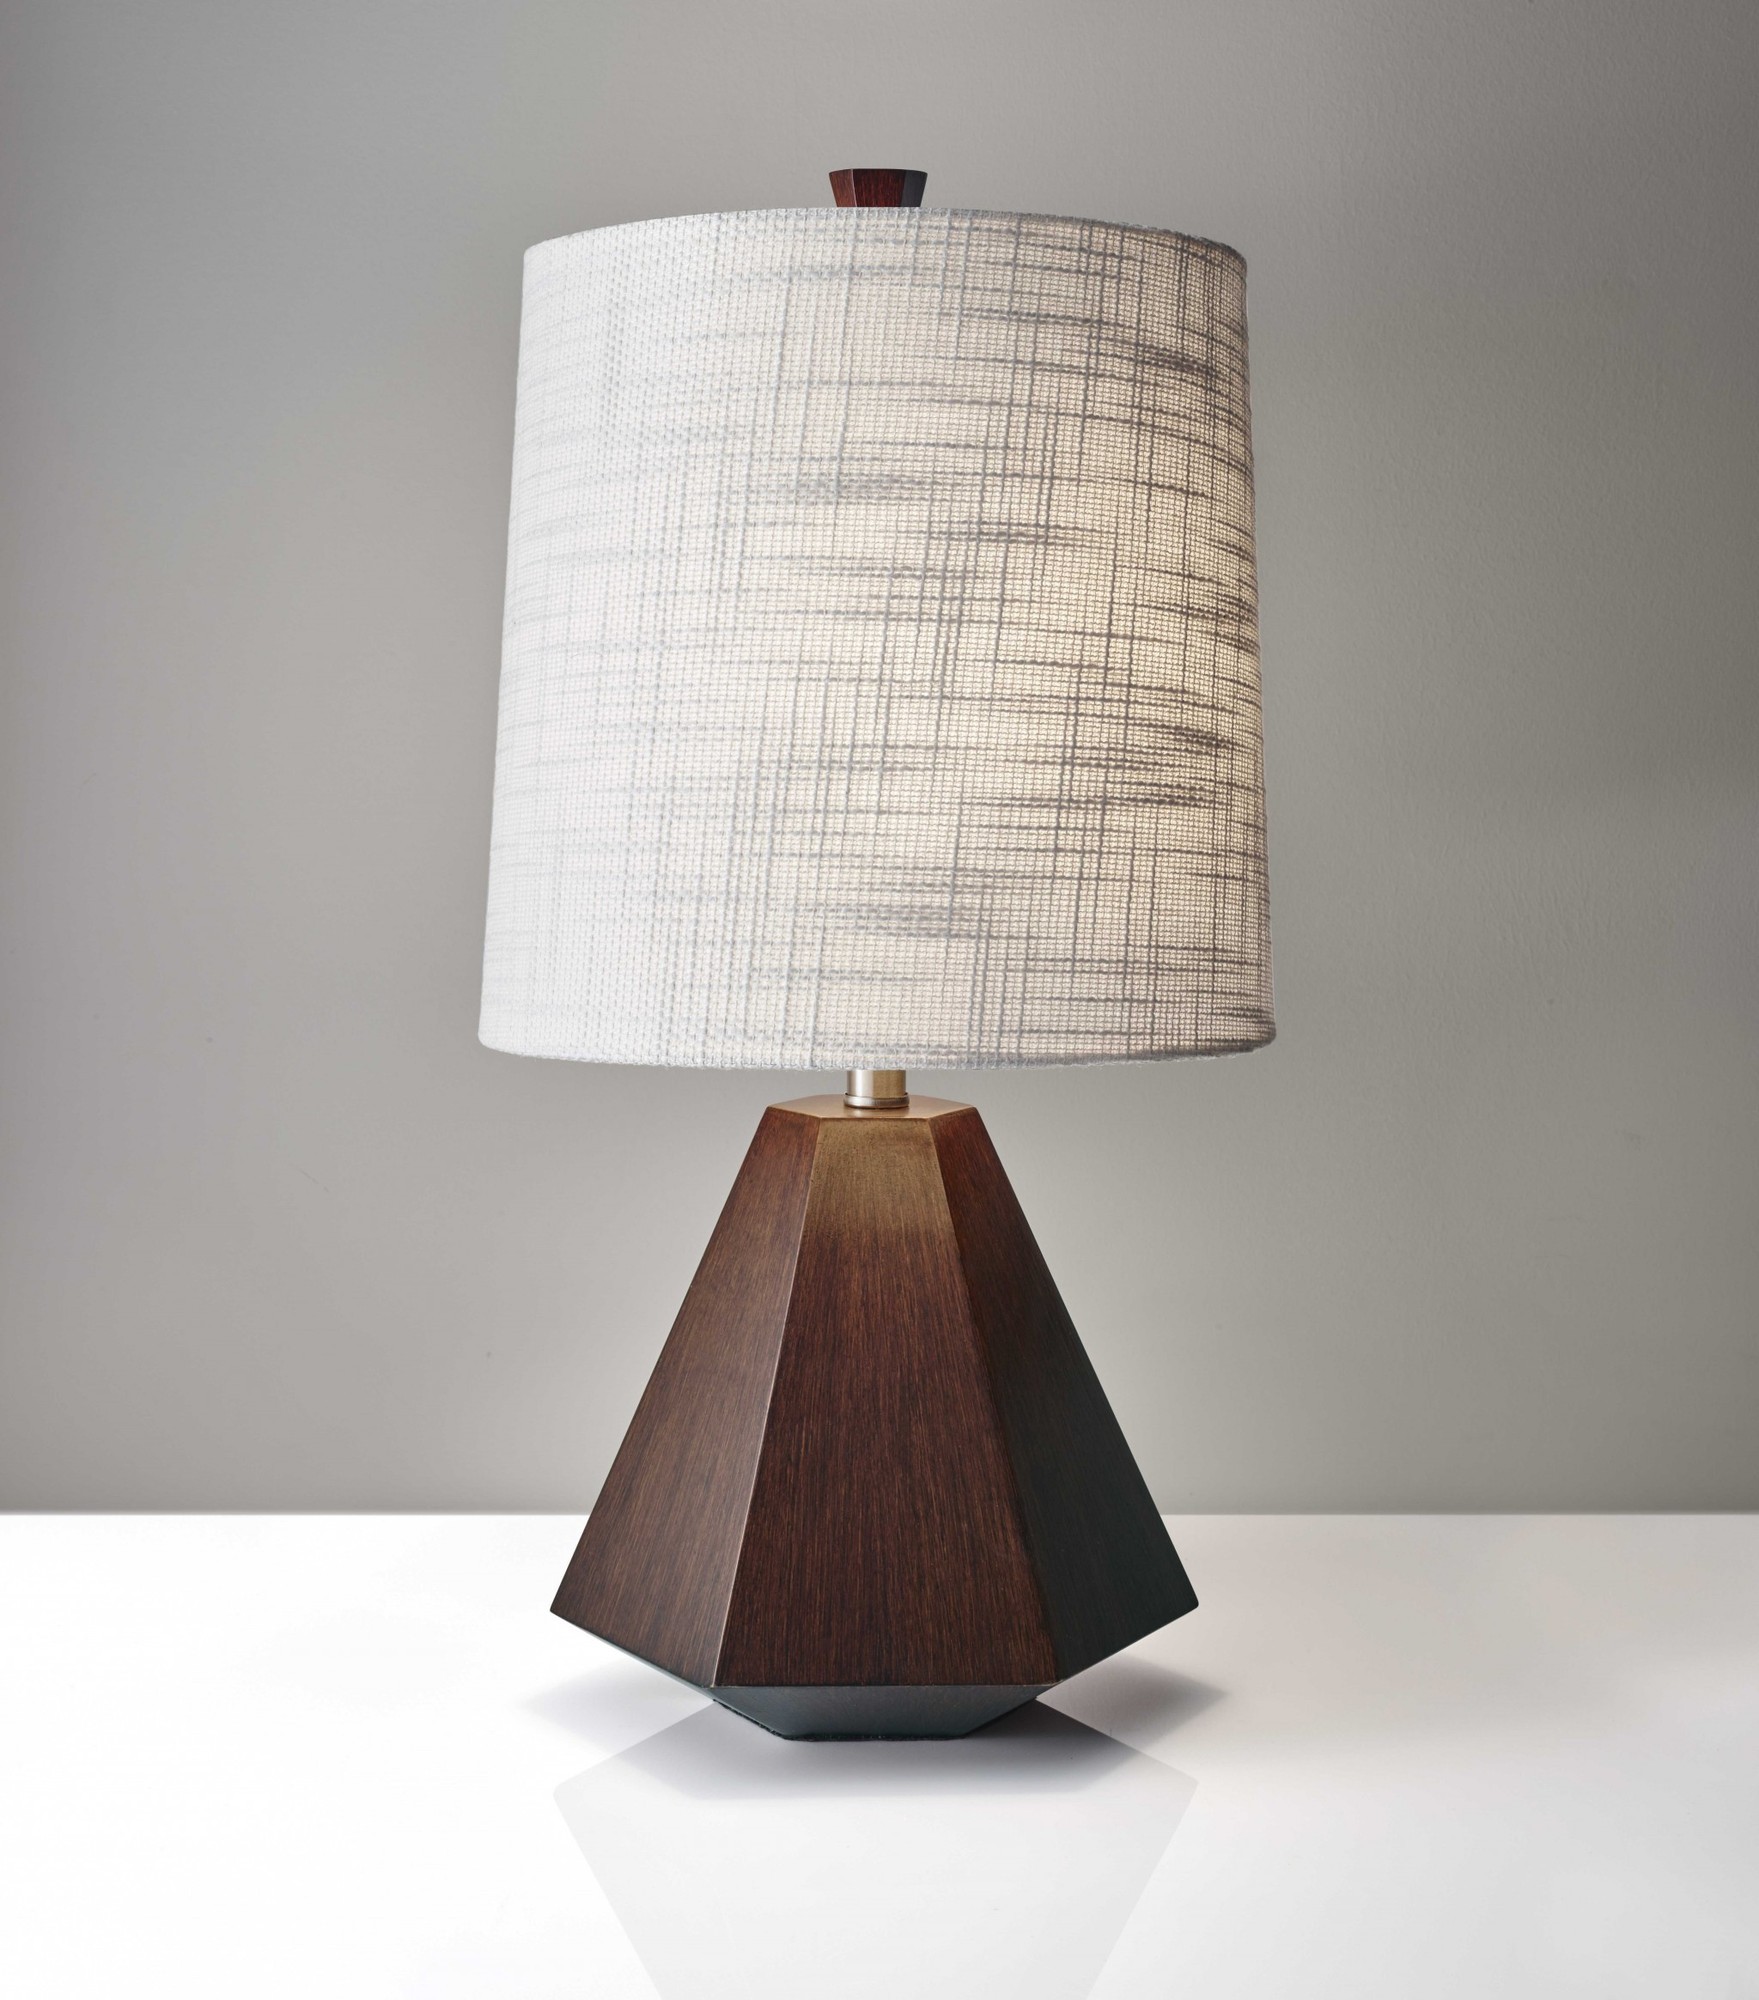 10.5" X 10.5" X 25" Walnut Wood Fabric Table Lamp